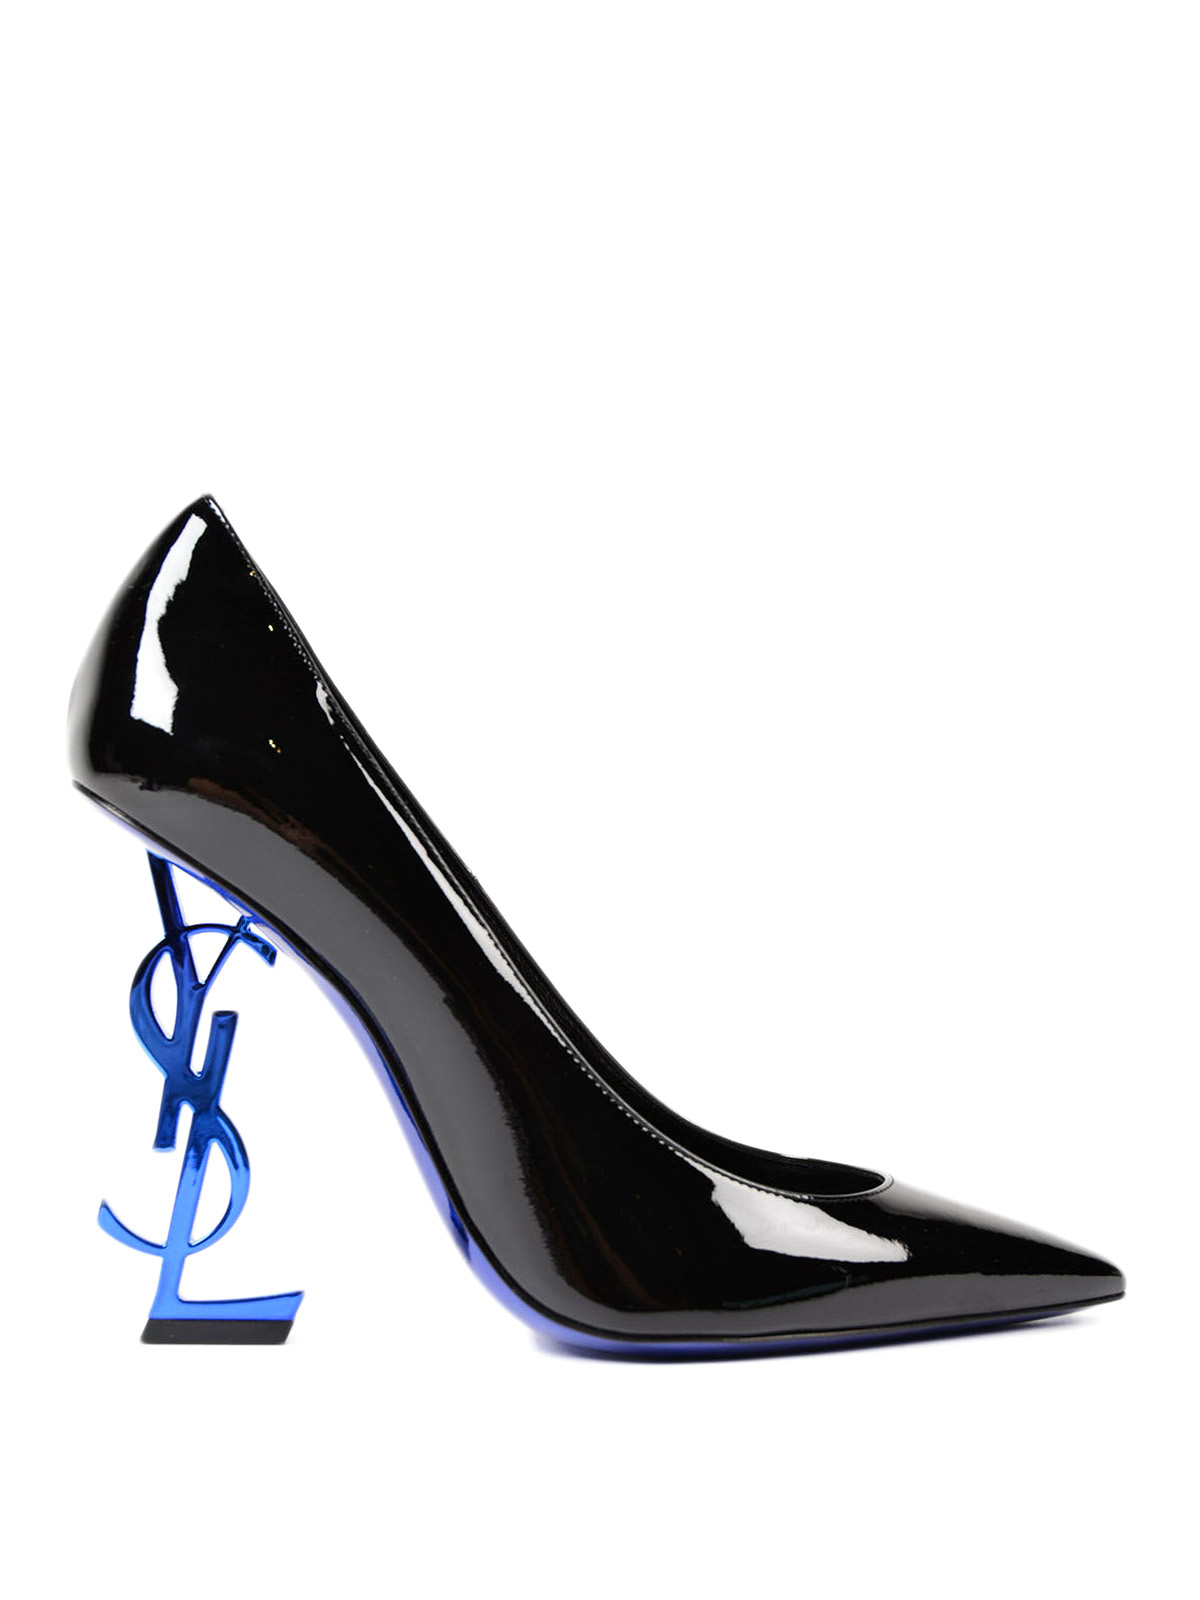 Court shoes Saint Laurent - Opyum 110 ysl heeled patent pumps ...